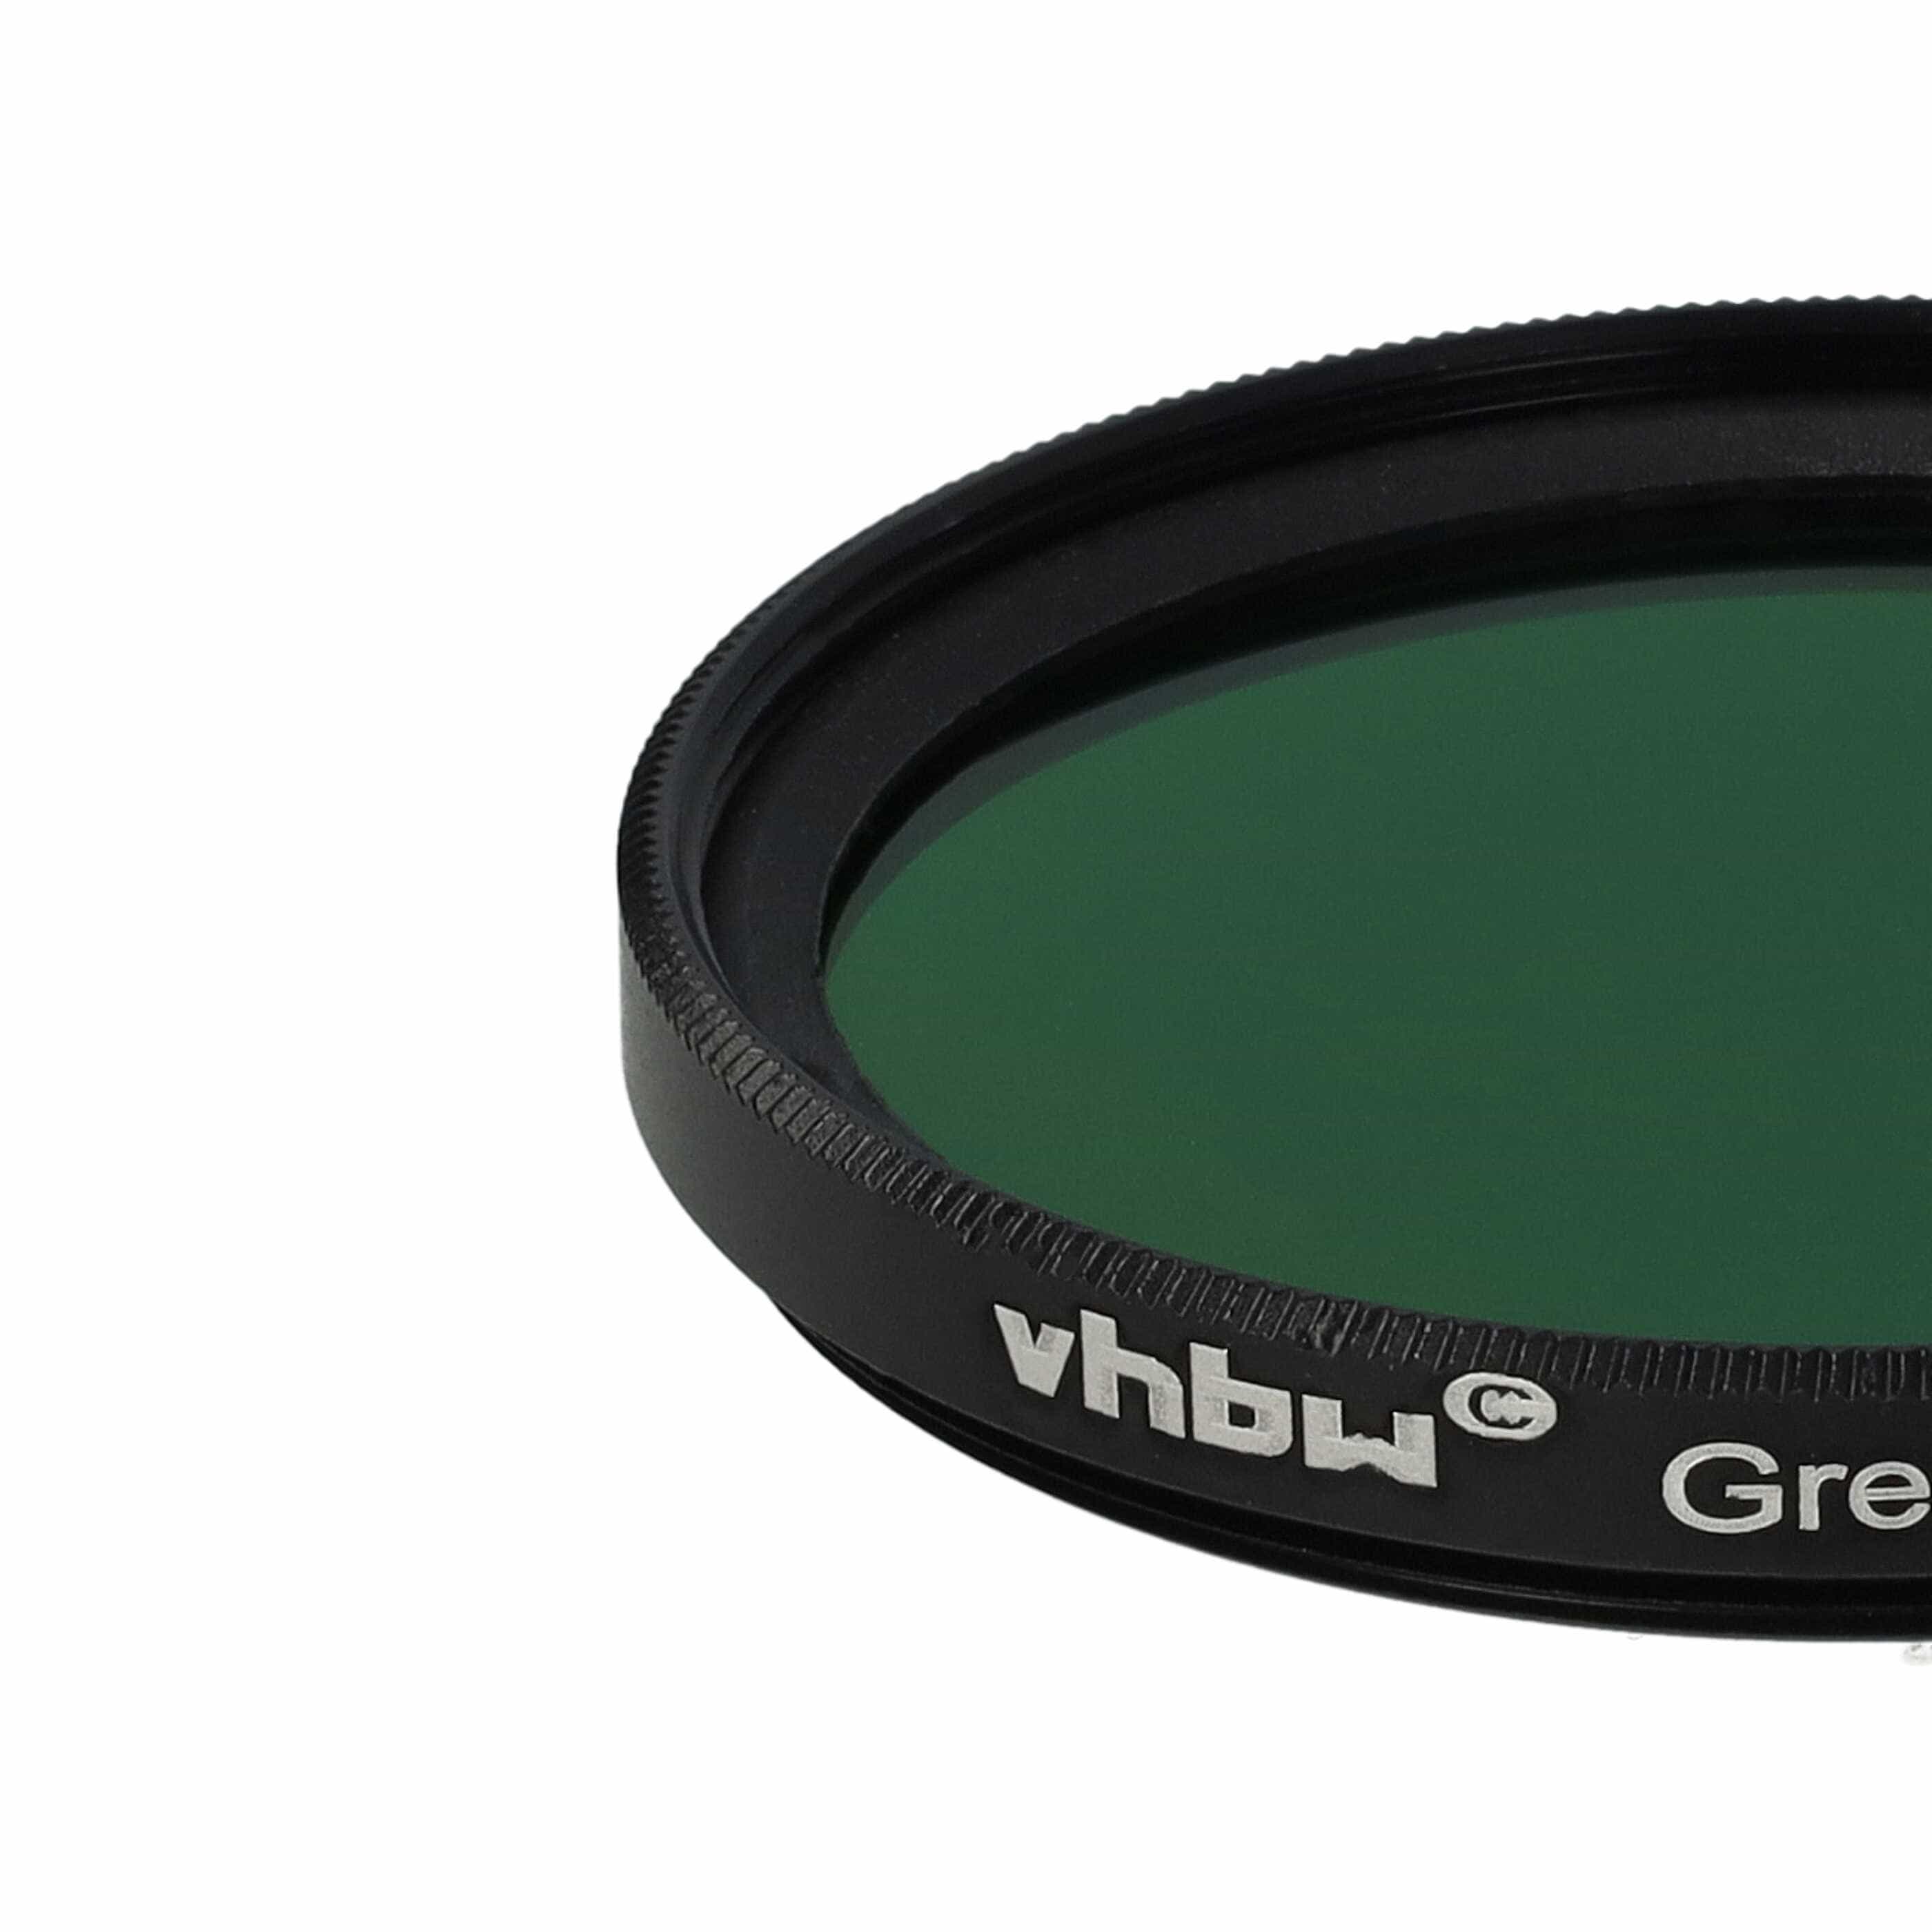 Filtro de color para objetivo de cámara con rosca de filtro de 43 mm - Filtro verde